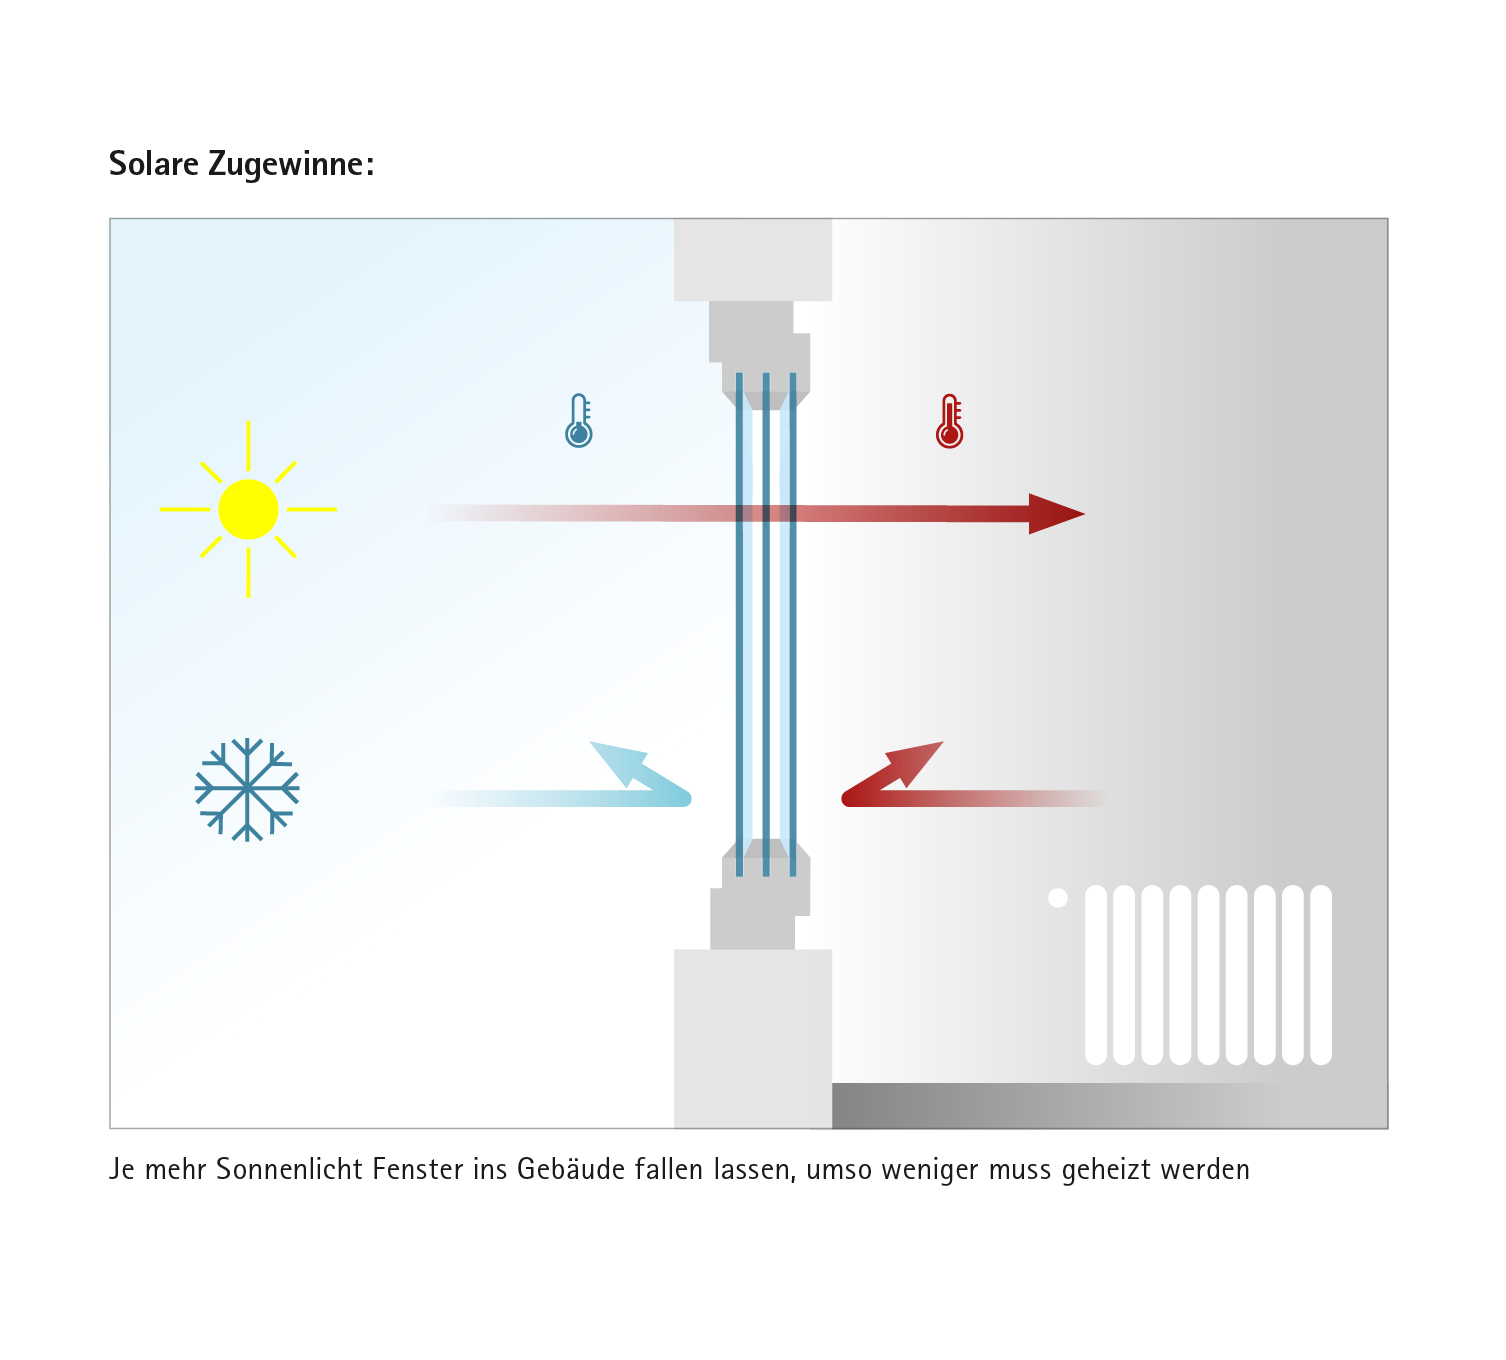 Solare Zugewinne: Je mehr Sonnenlicht Fenster ins Gebäude fallen lassen, umso weniger muss geheizt werden